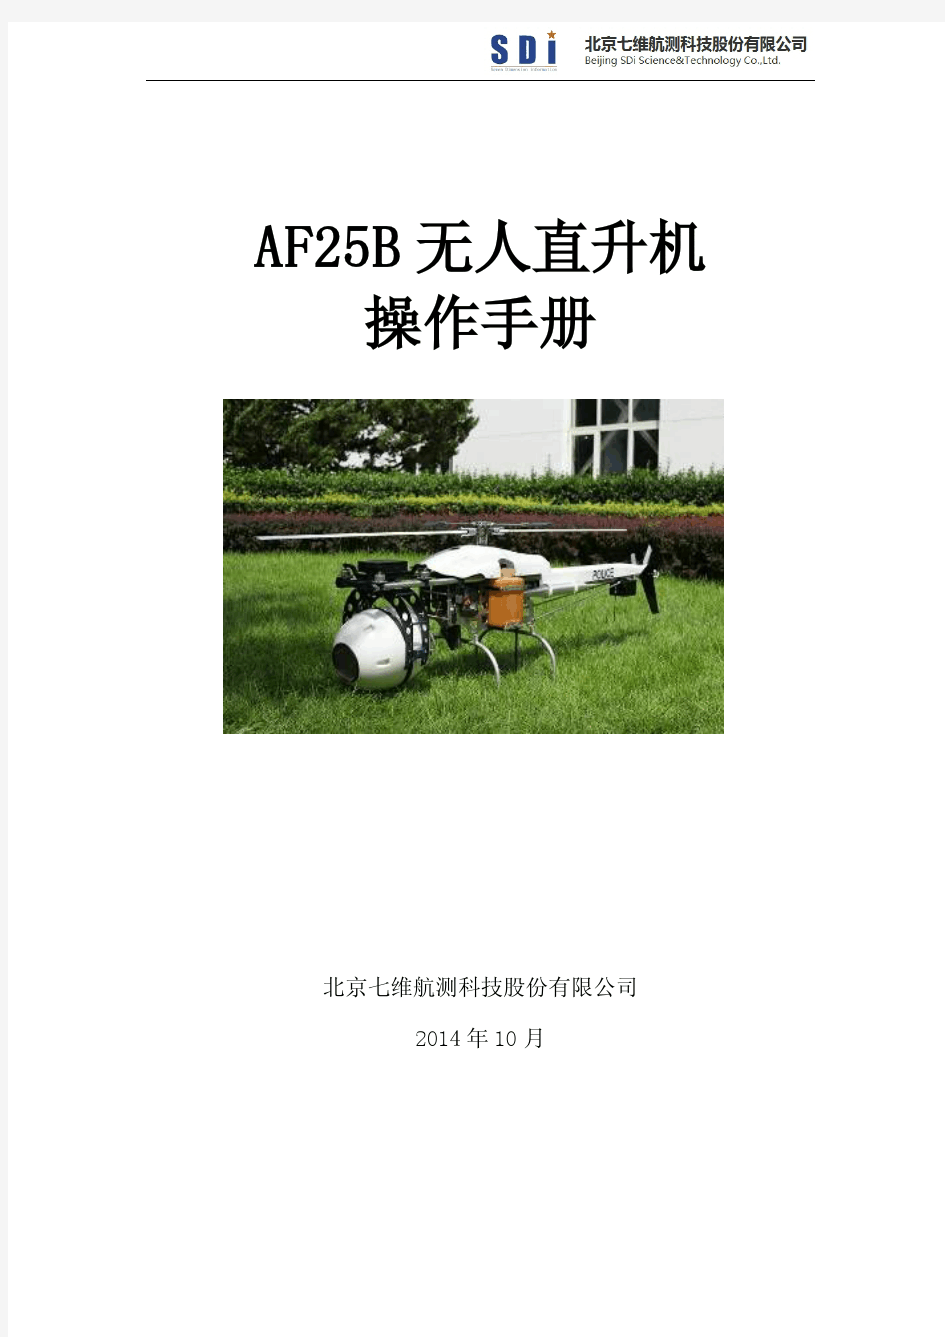 AF25B无人机手册